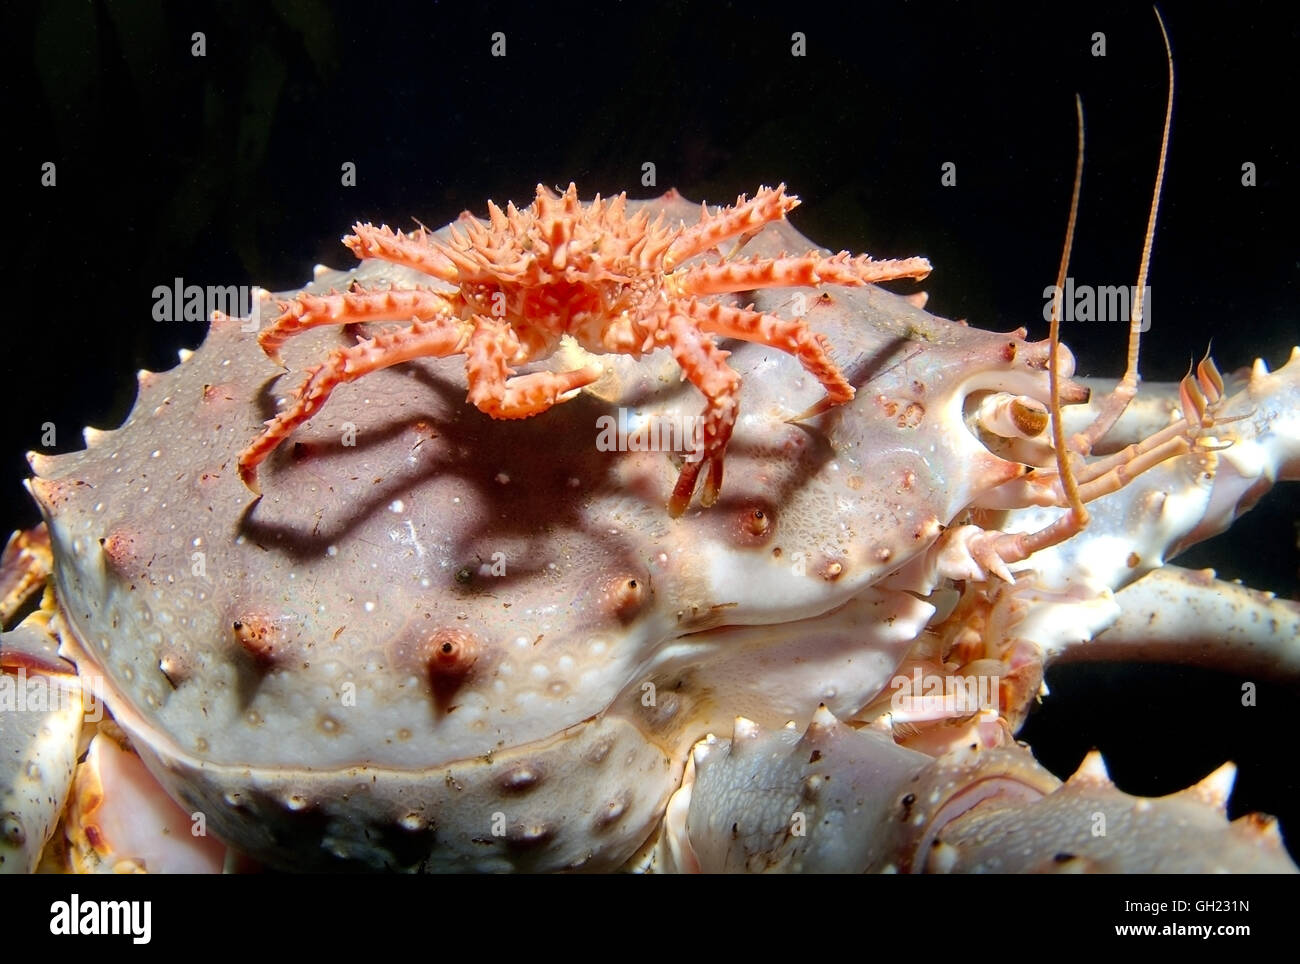 Baby rote Königskrabbe sitzt oben auf der Erwachsenen rote Königskrabbe, Kamtschatka-Krabbe oder Alaska King Crab (Paralithodes cantschaticus) Stockfoto